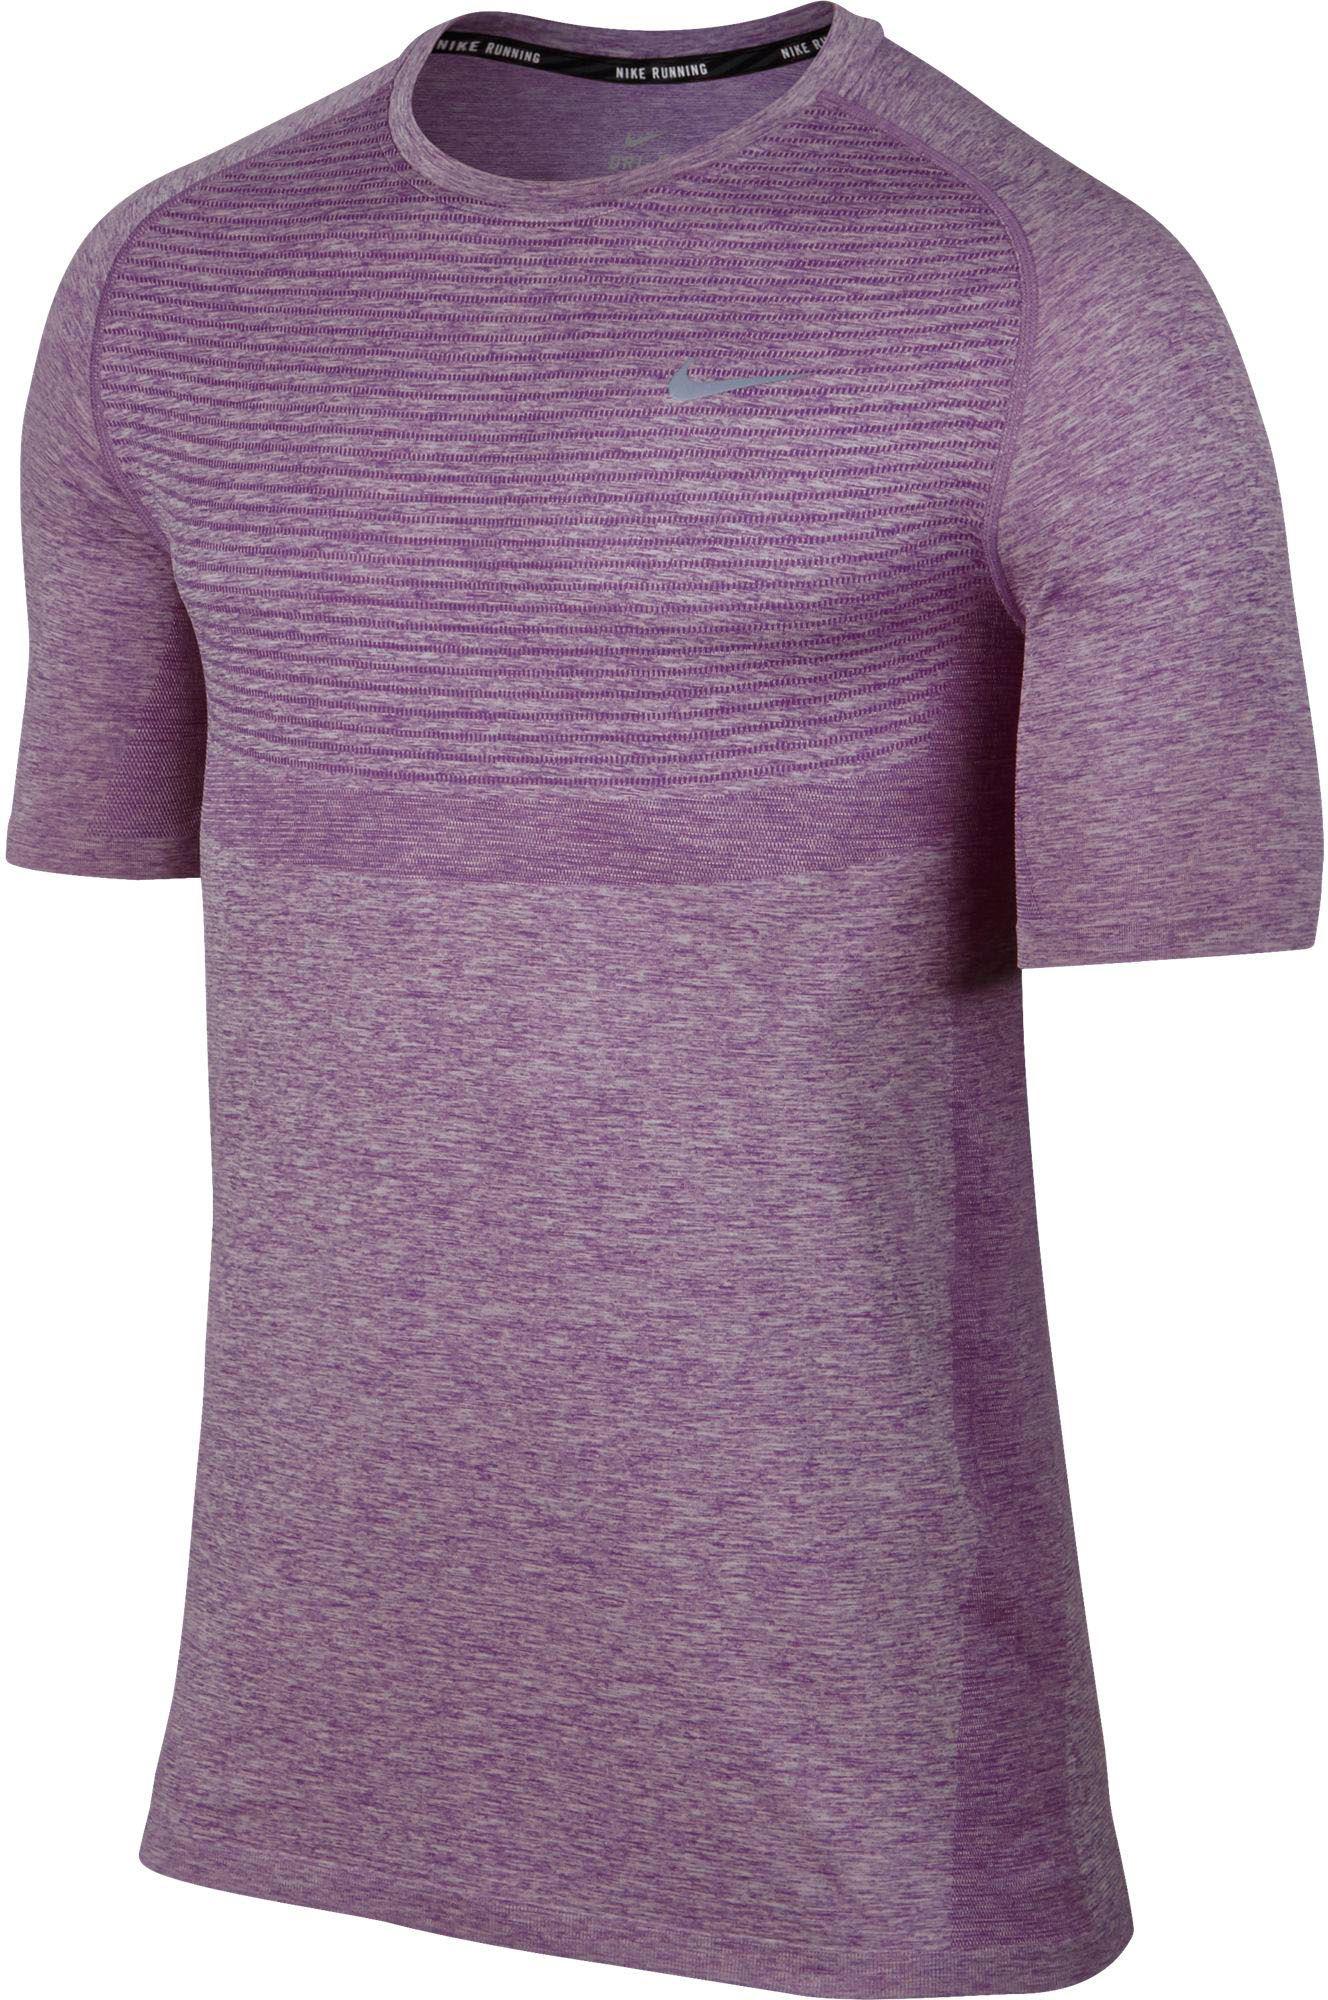 mens purple dri fit shirt,debisschop.be